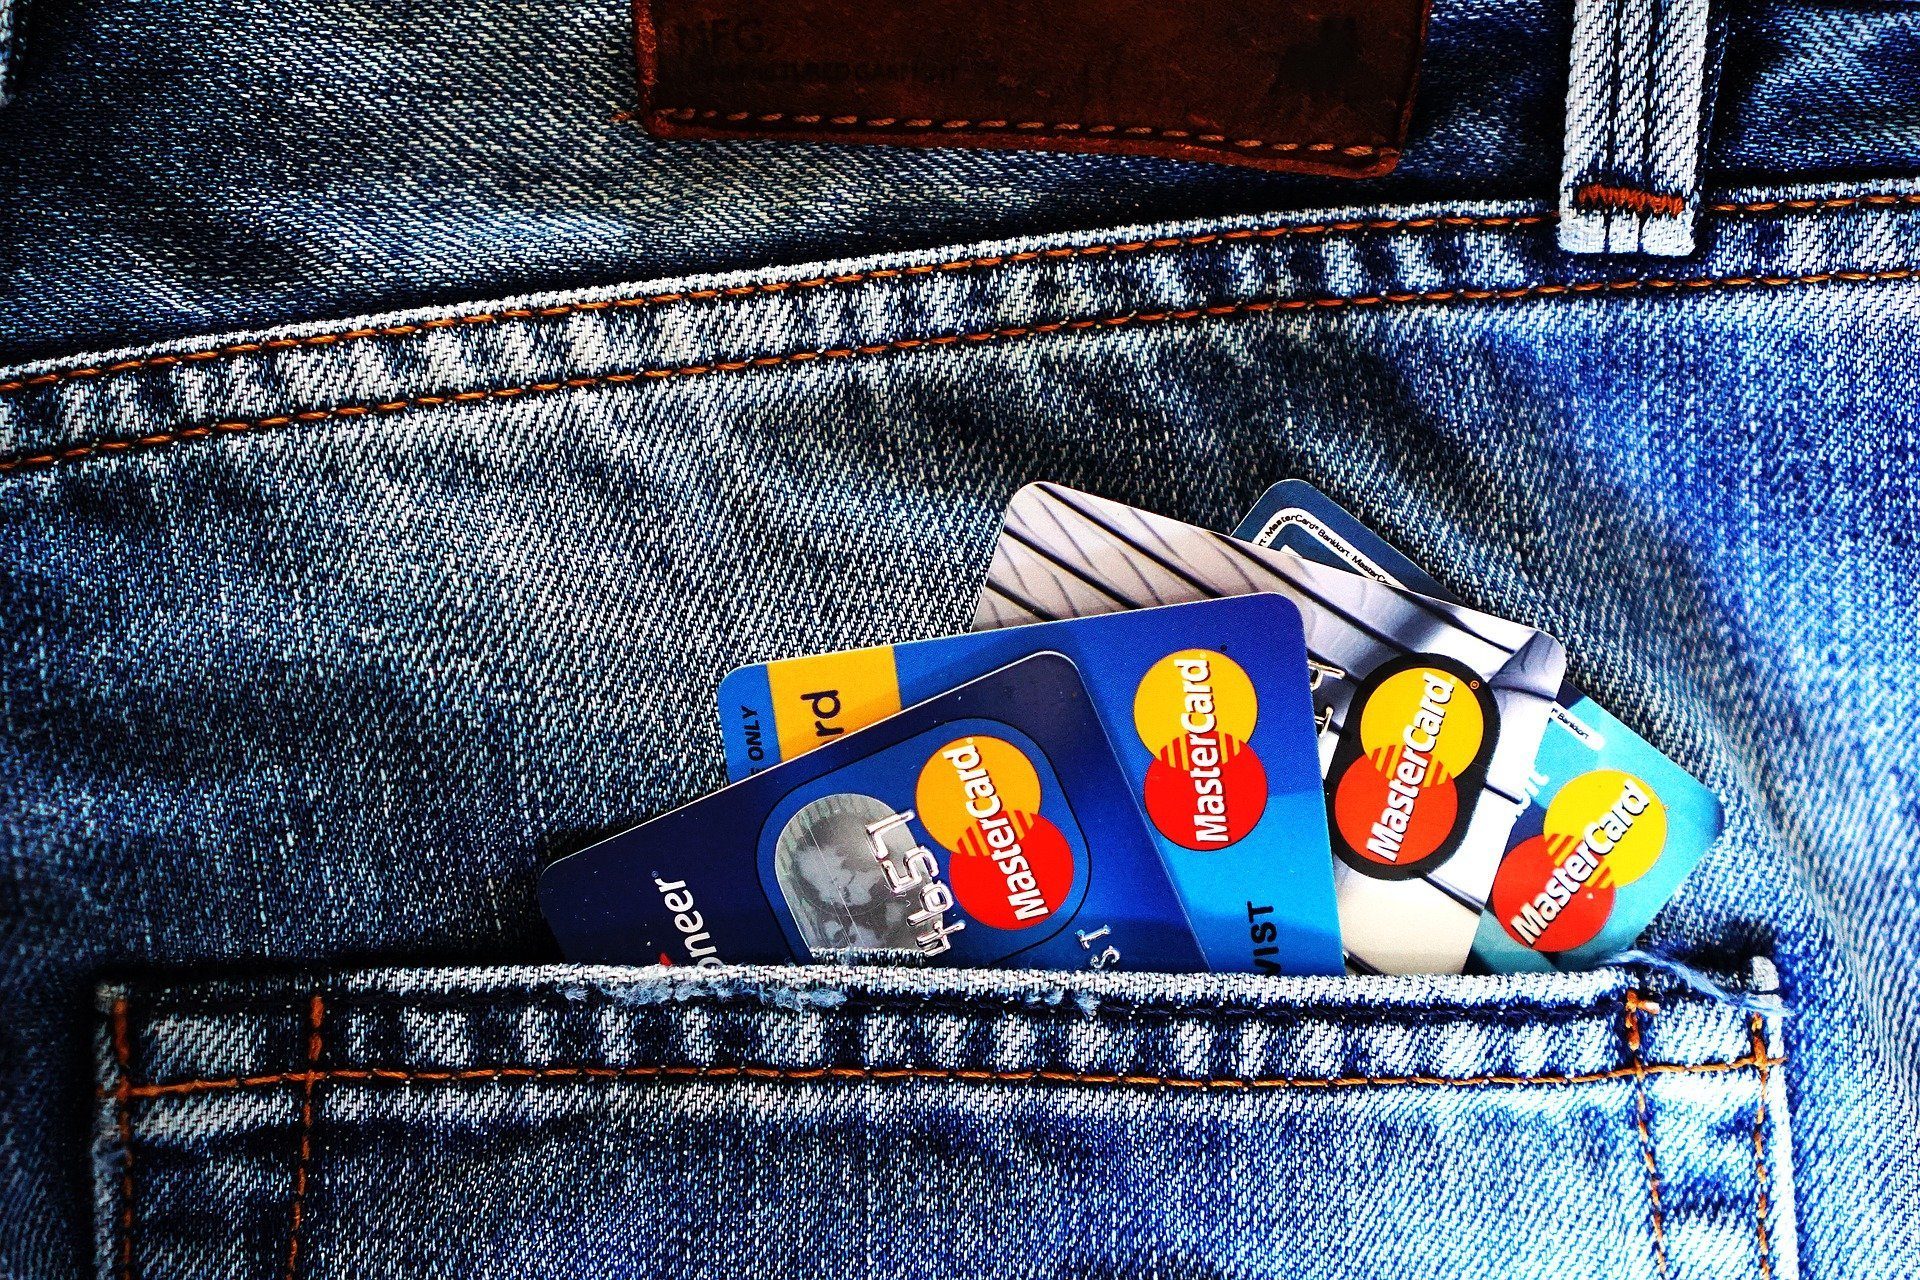 Je bekijkt nu Waarom is een creditcard handig en waarvoor vraag je die aan?